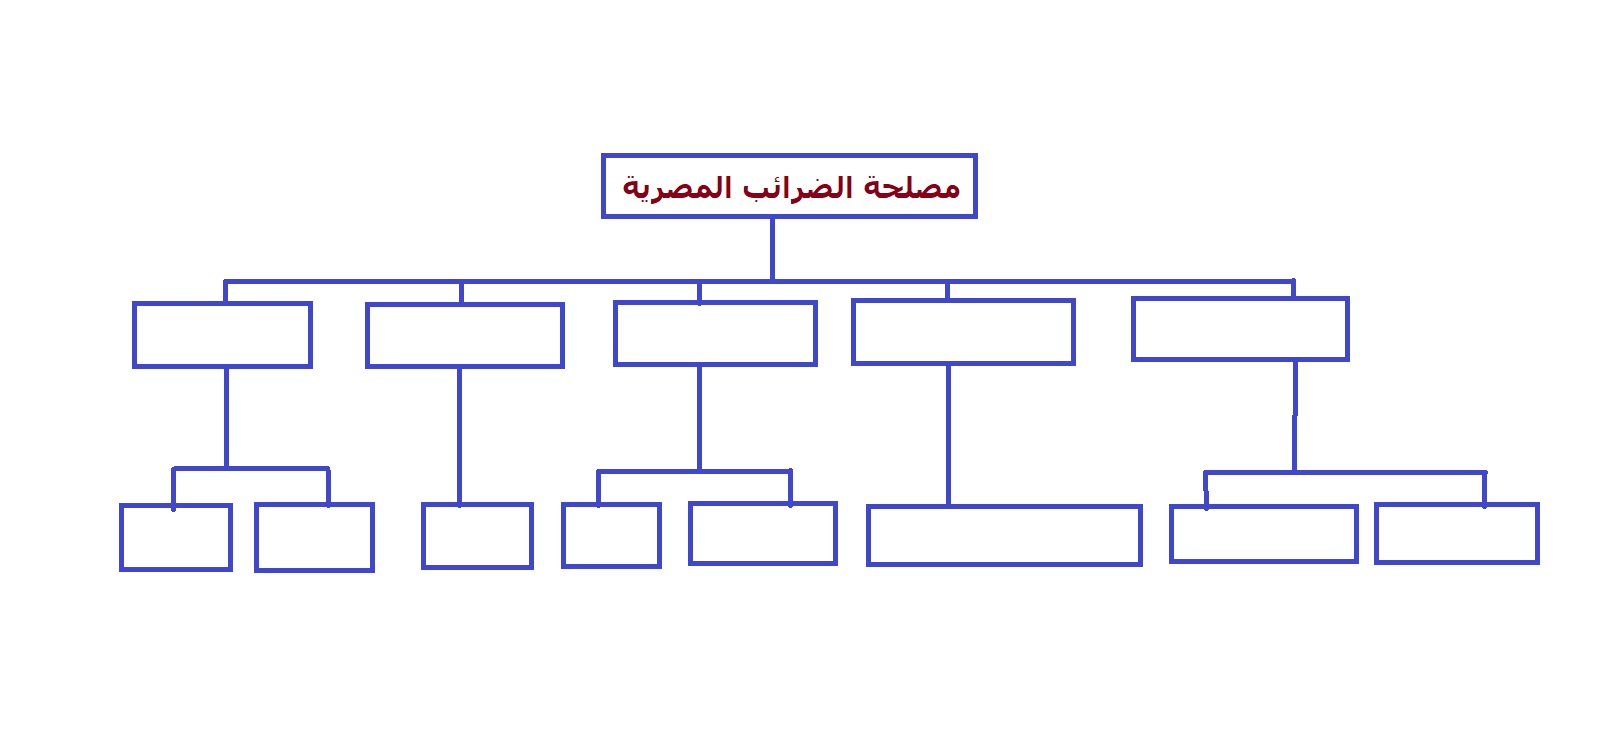 الهيكل التنظيمي1